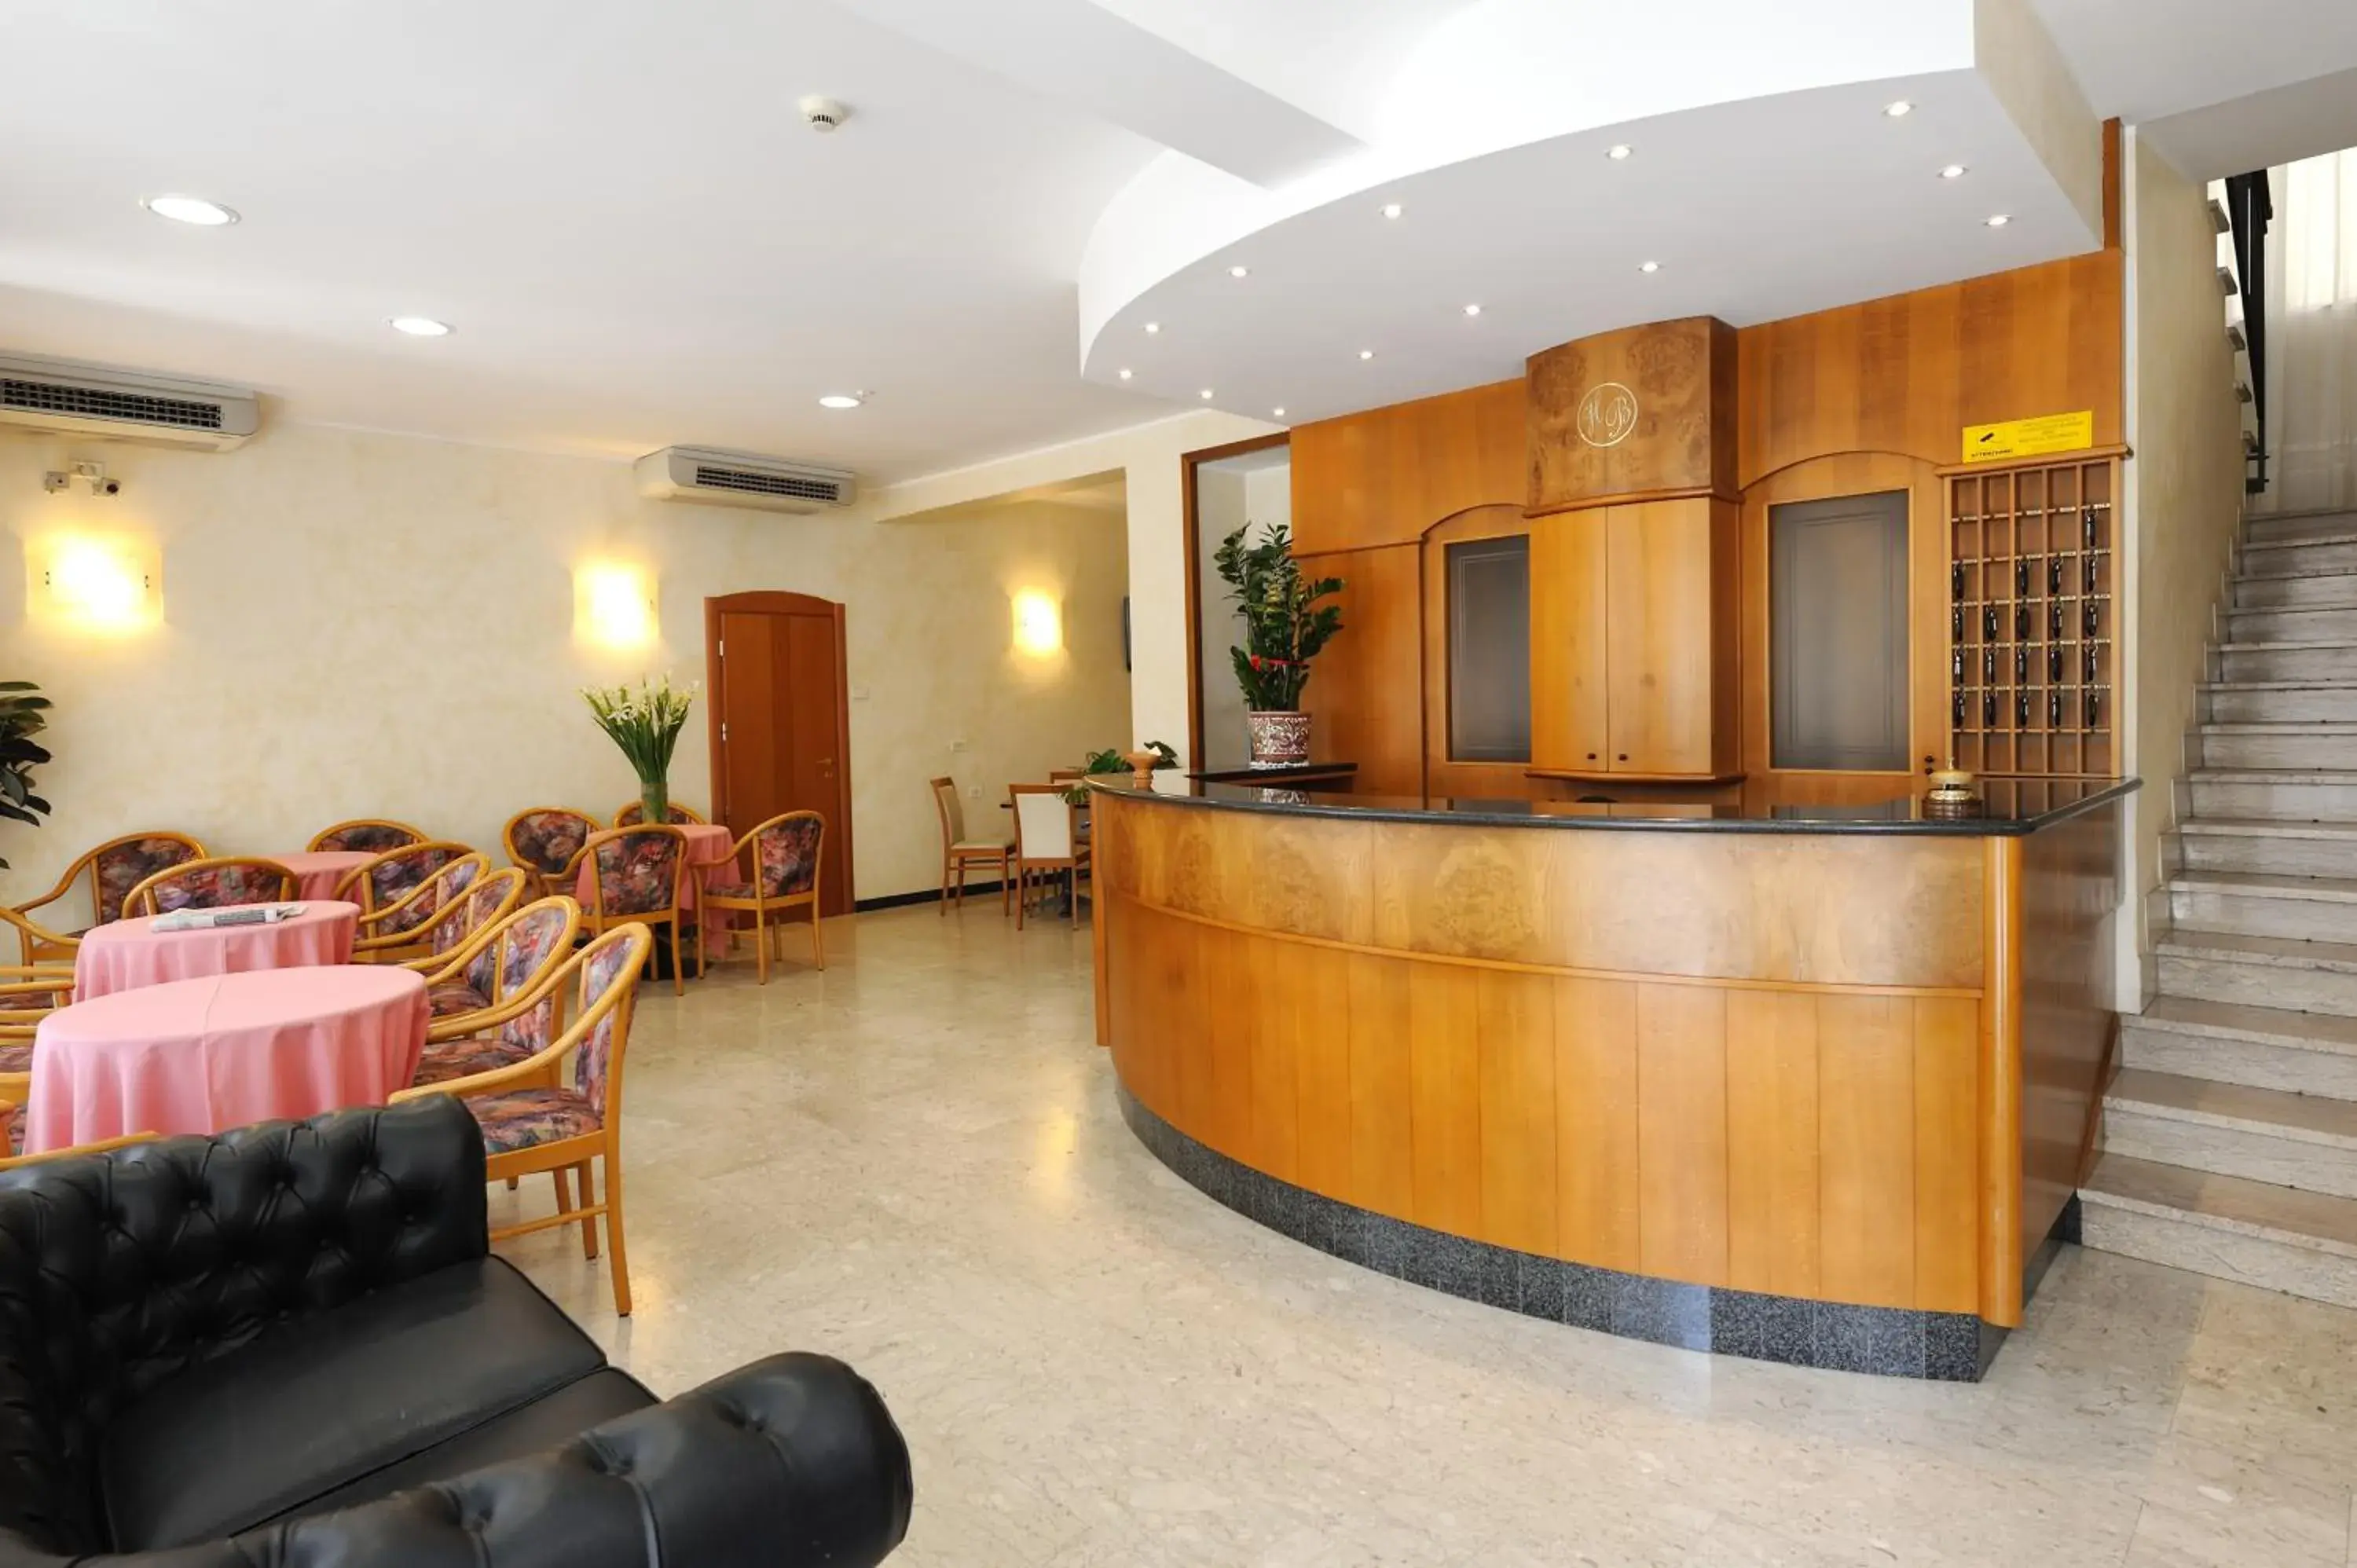 Lobby or reception in Hotel Bridge